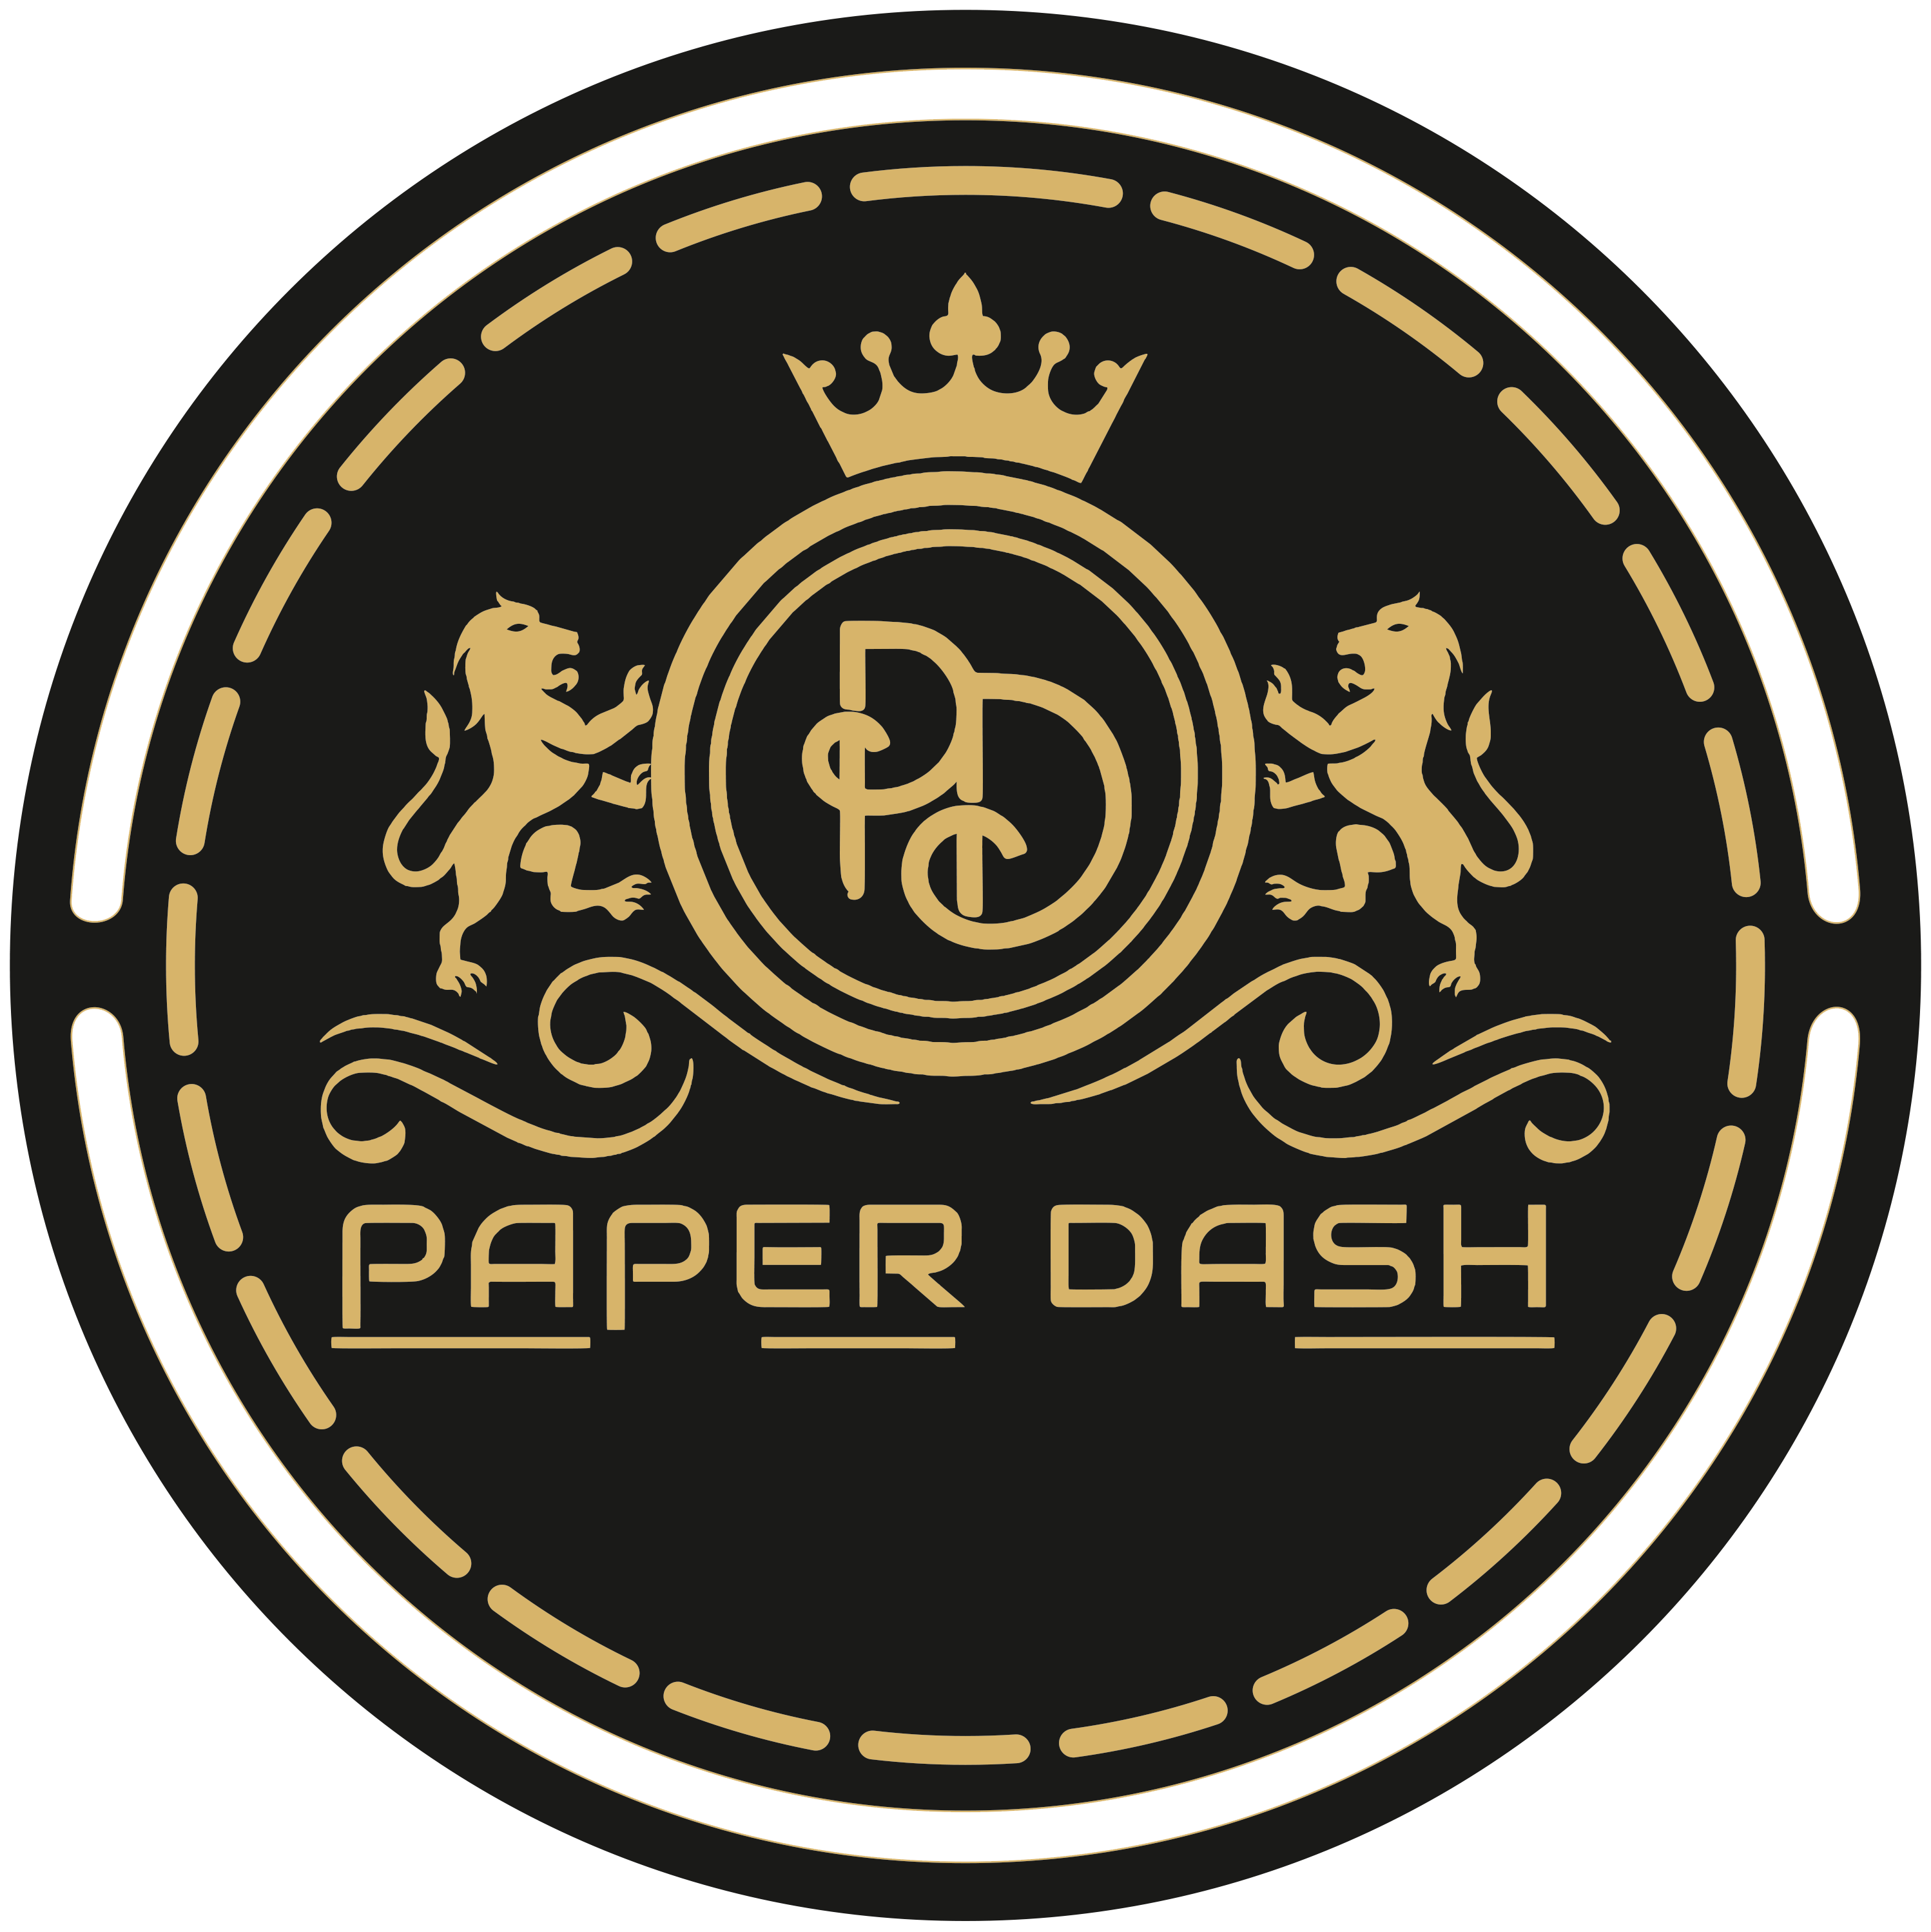 The Paper Dash